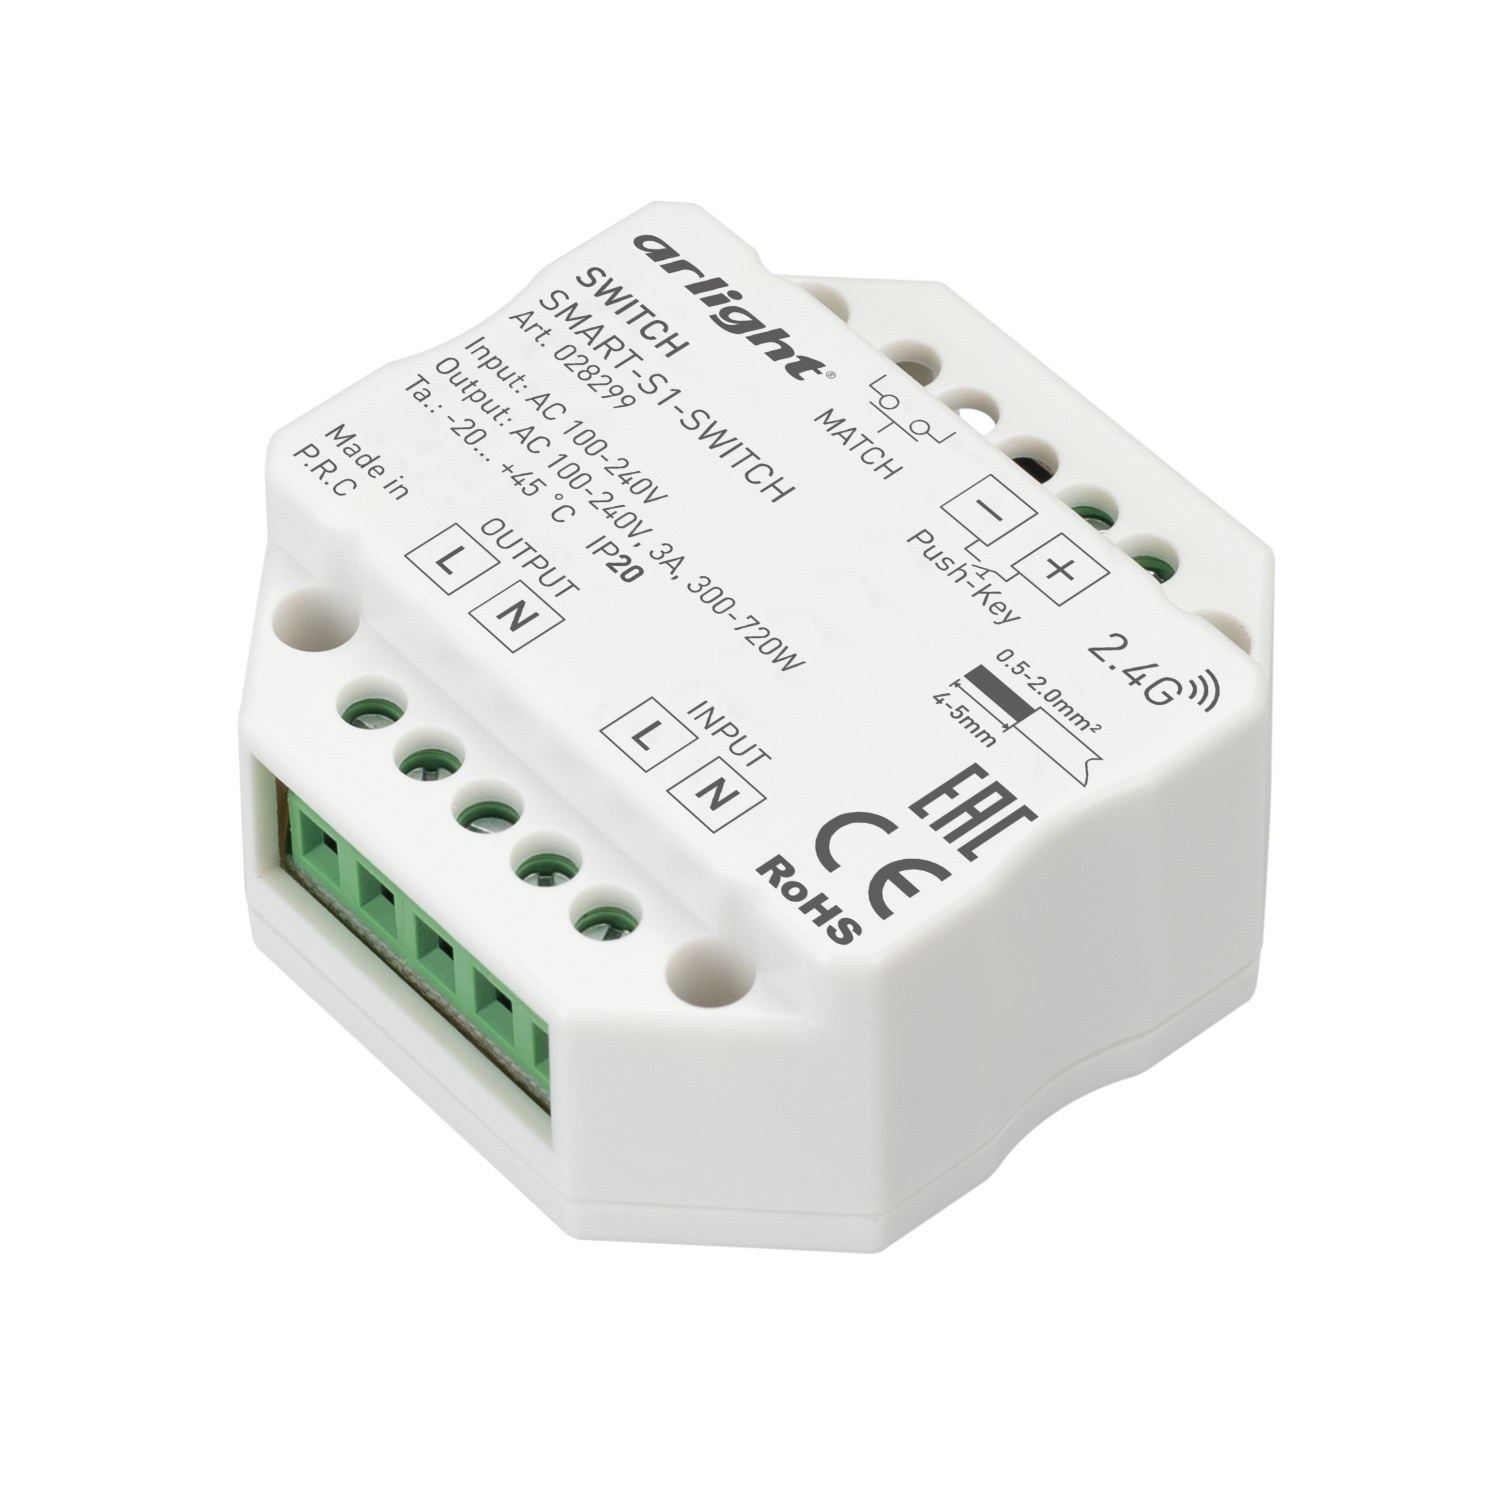 Изображение 028299 | Контроллер-выключатель SMART-S1-SWITCH (230V, 3A, 2.4G) (IP20 Пластик, 5 лет) 028299 Arlight в магазине ЭлектроМИР